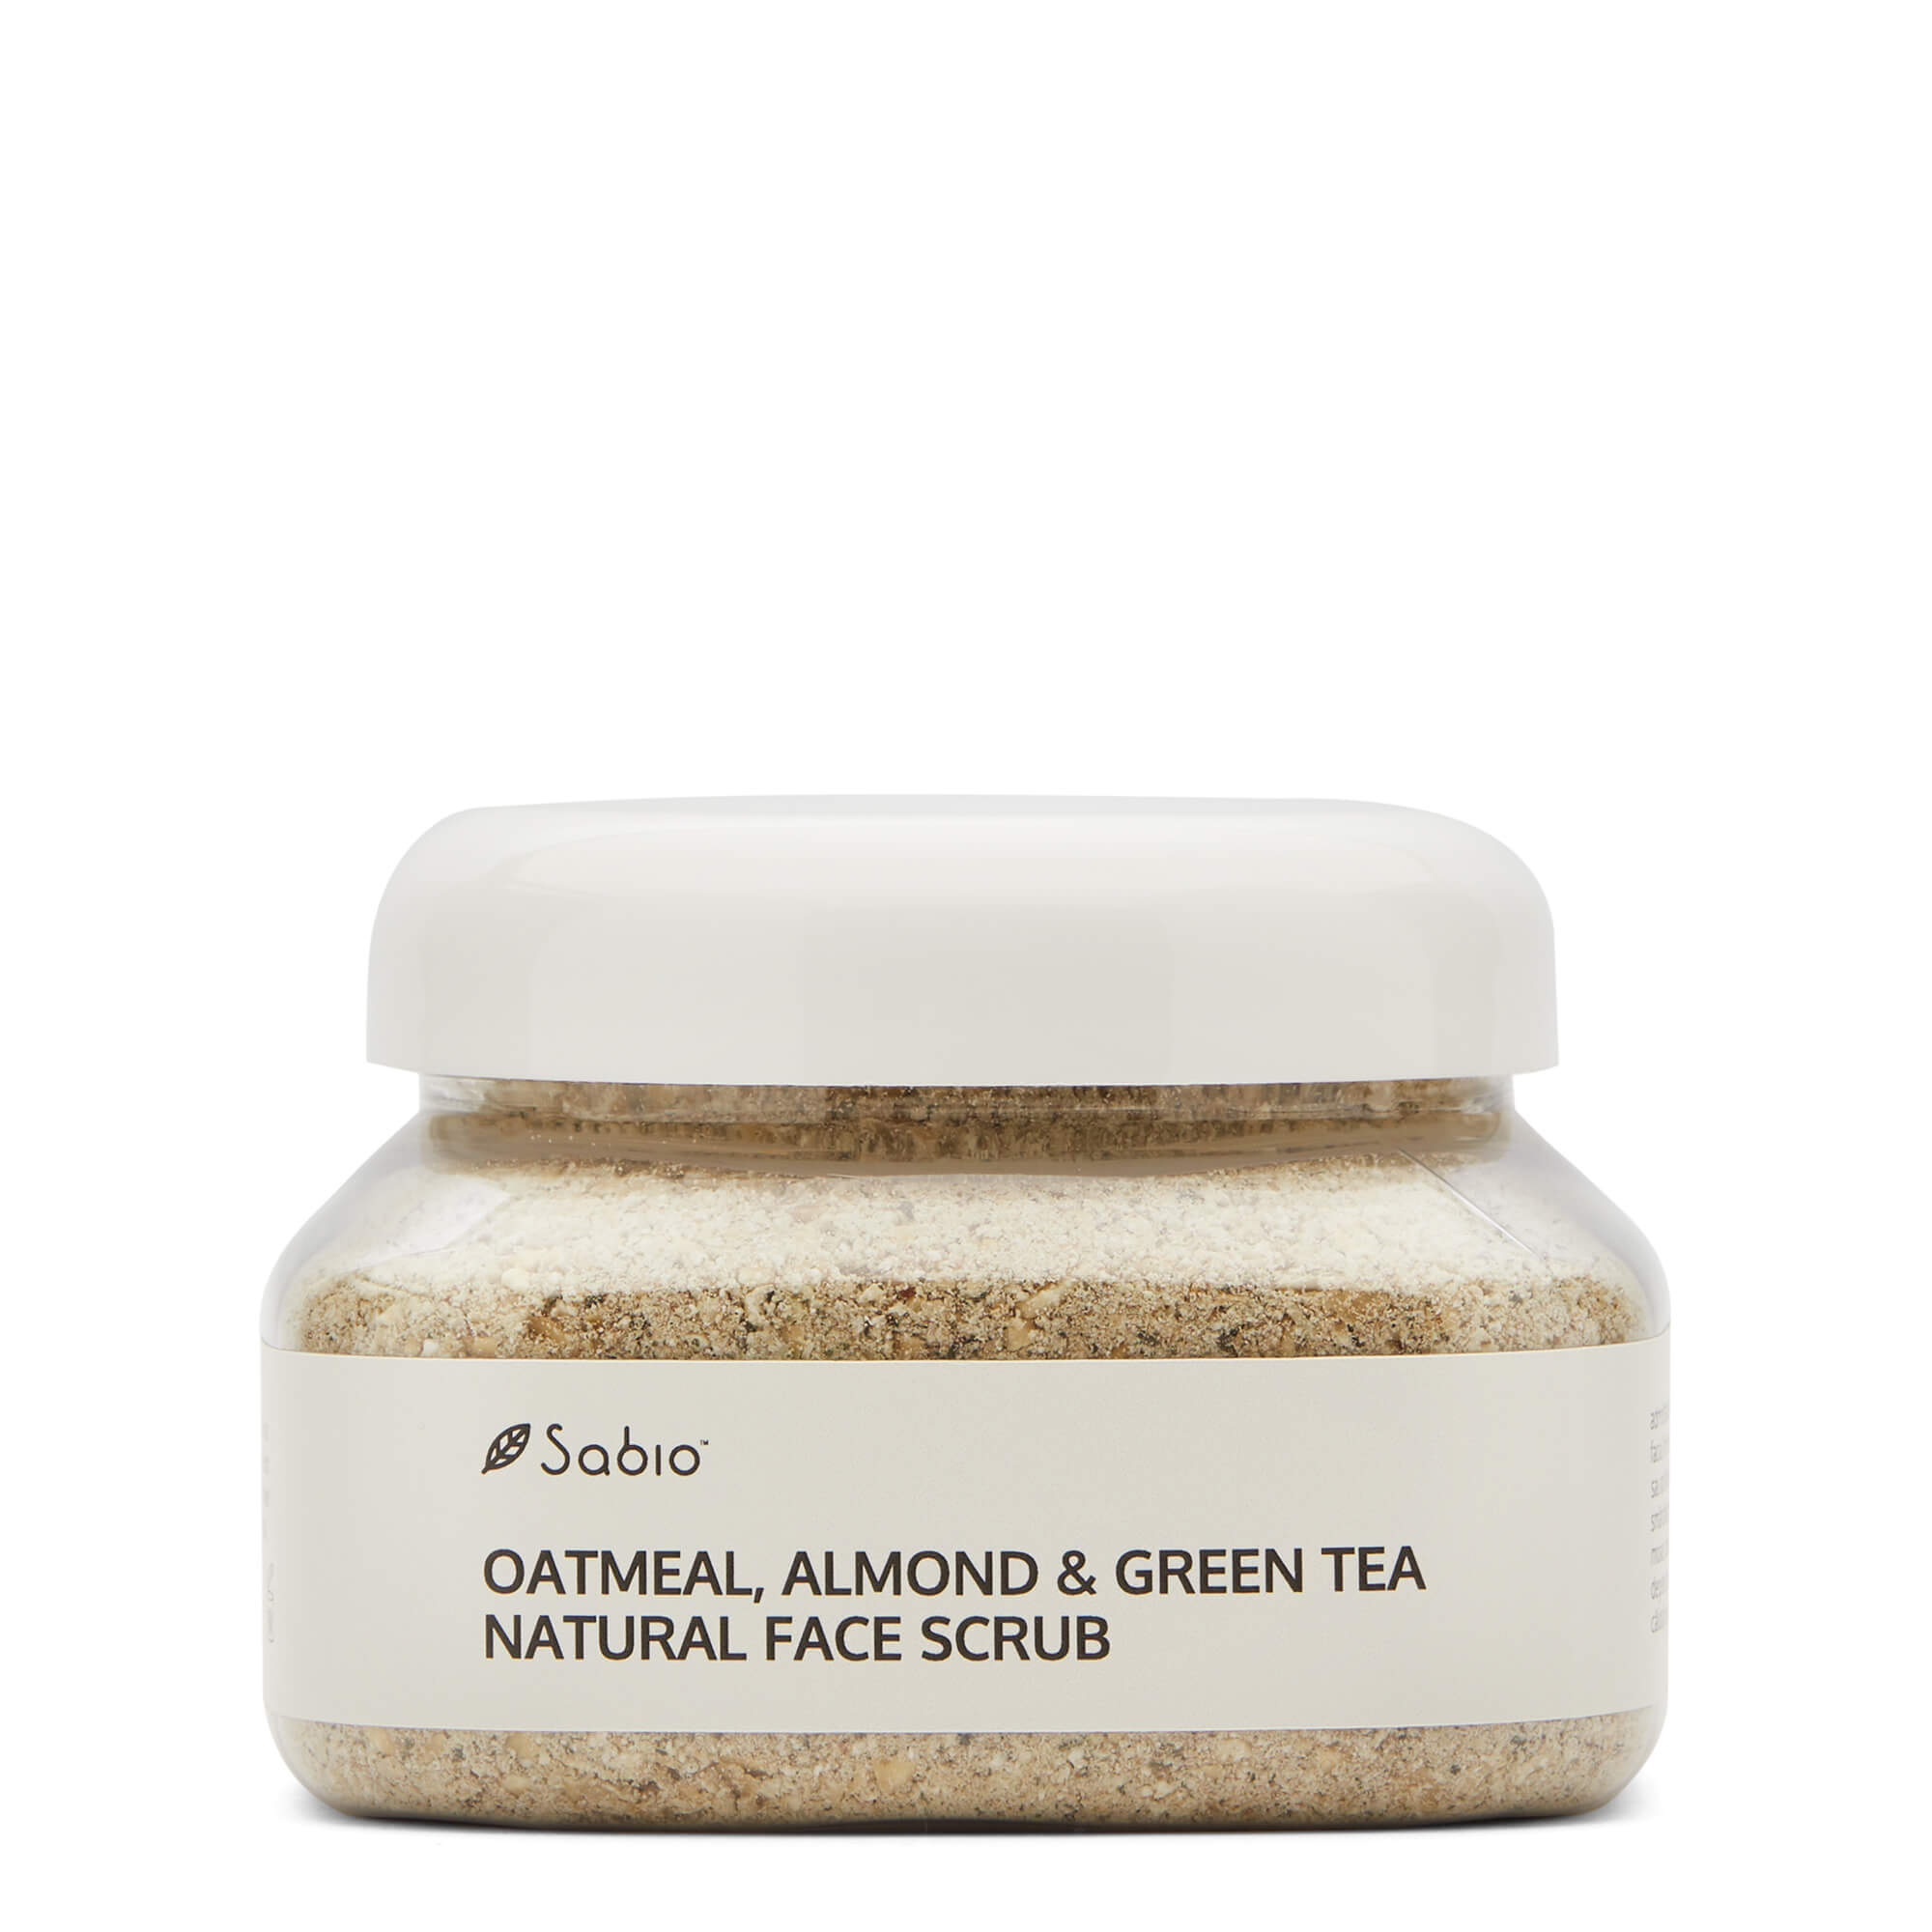 Facial exfoliant - Oatmeal, Almond & Green Tea